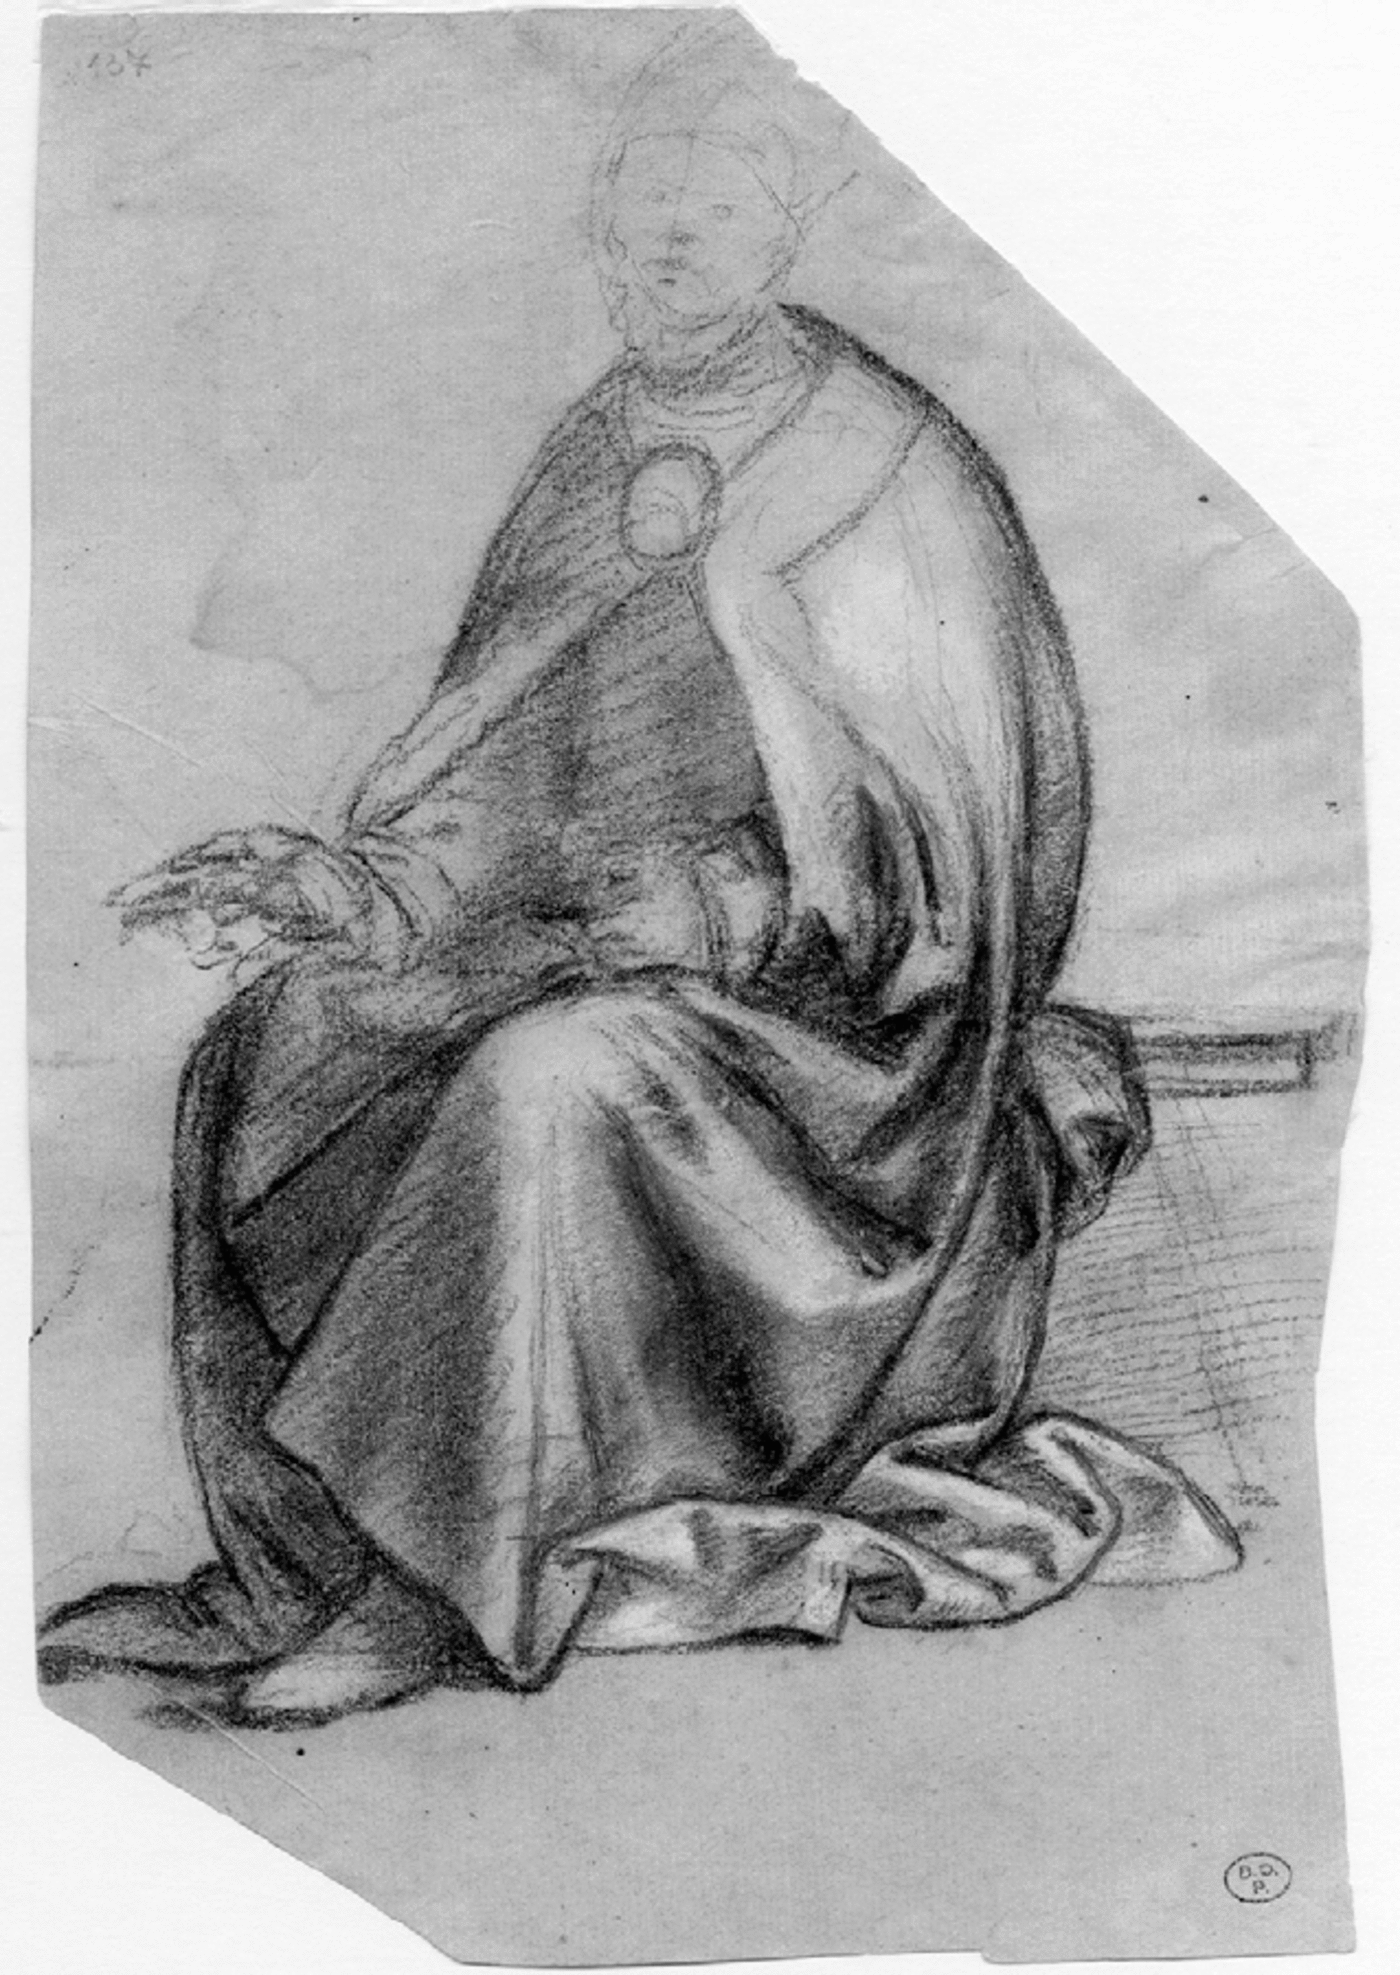 Exorcising the Borgia from Urbino: Timoteo Viti's Arrivabene Chapel, Renaissance Quarterly